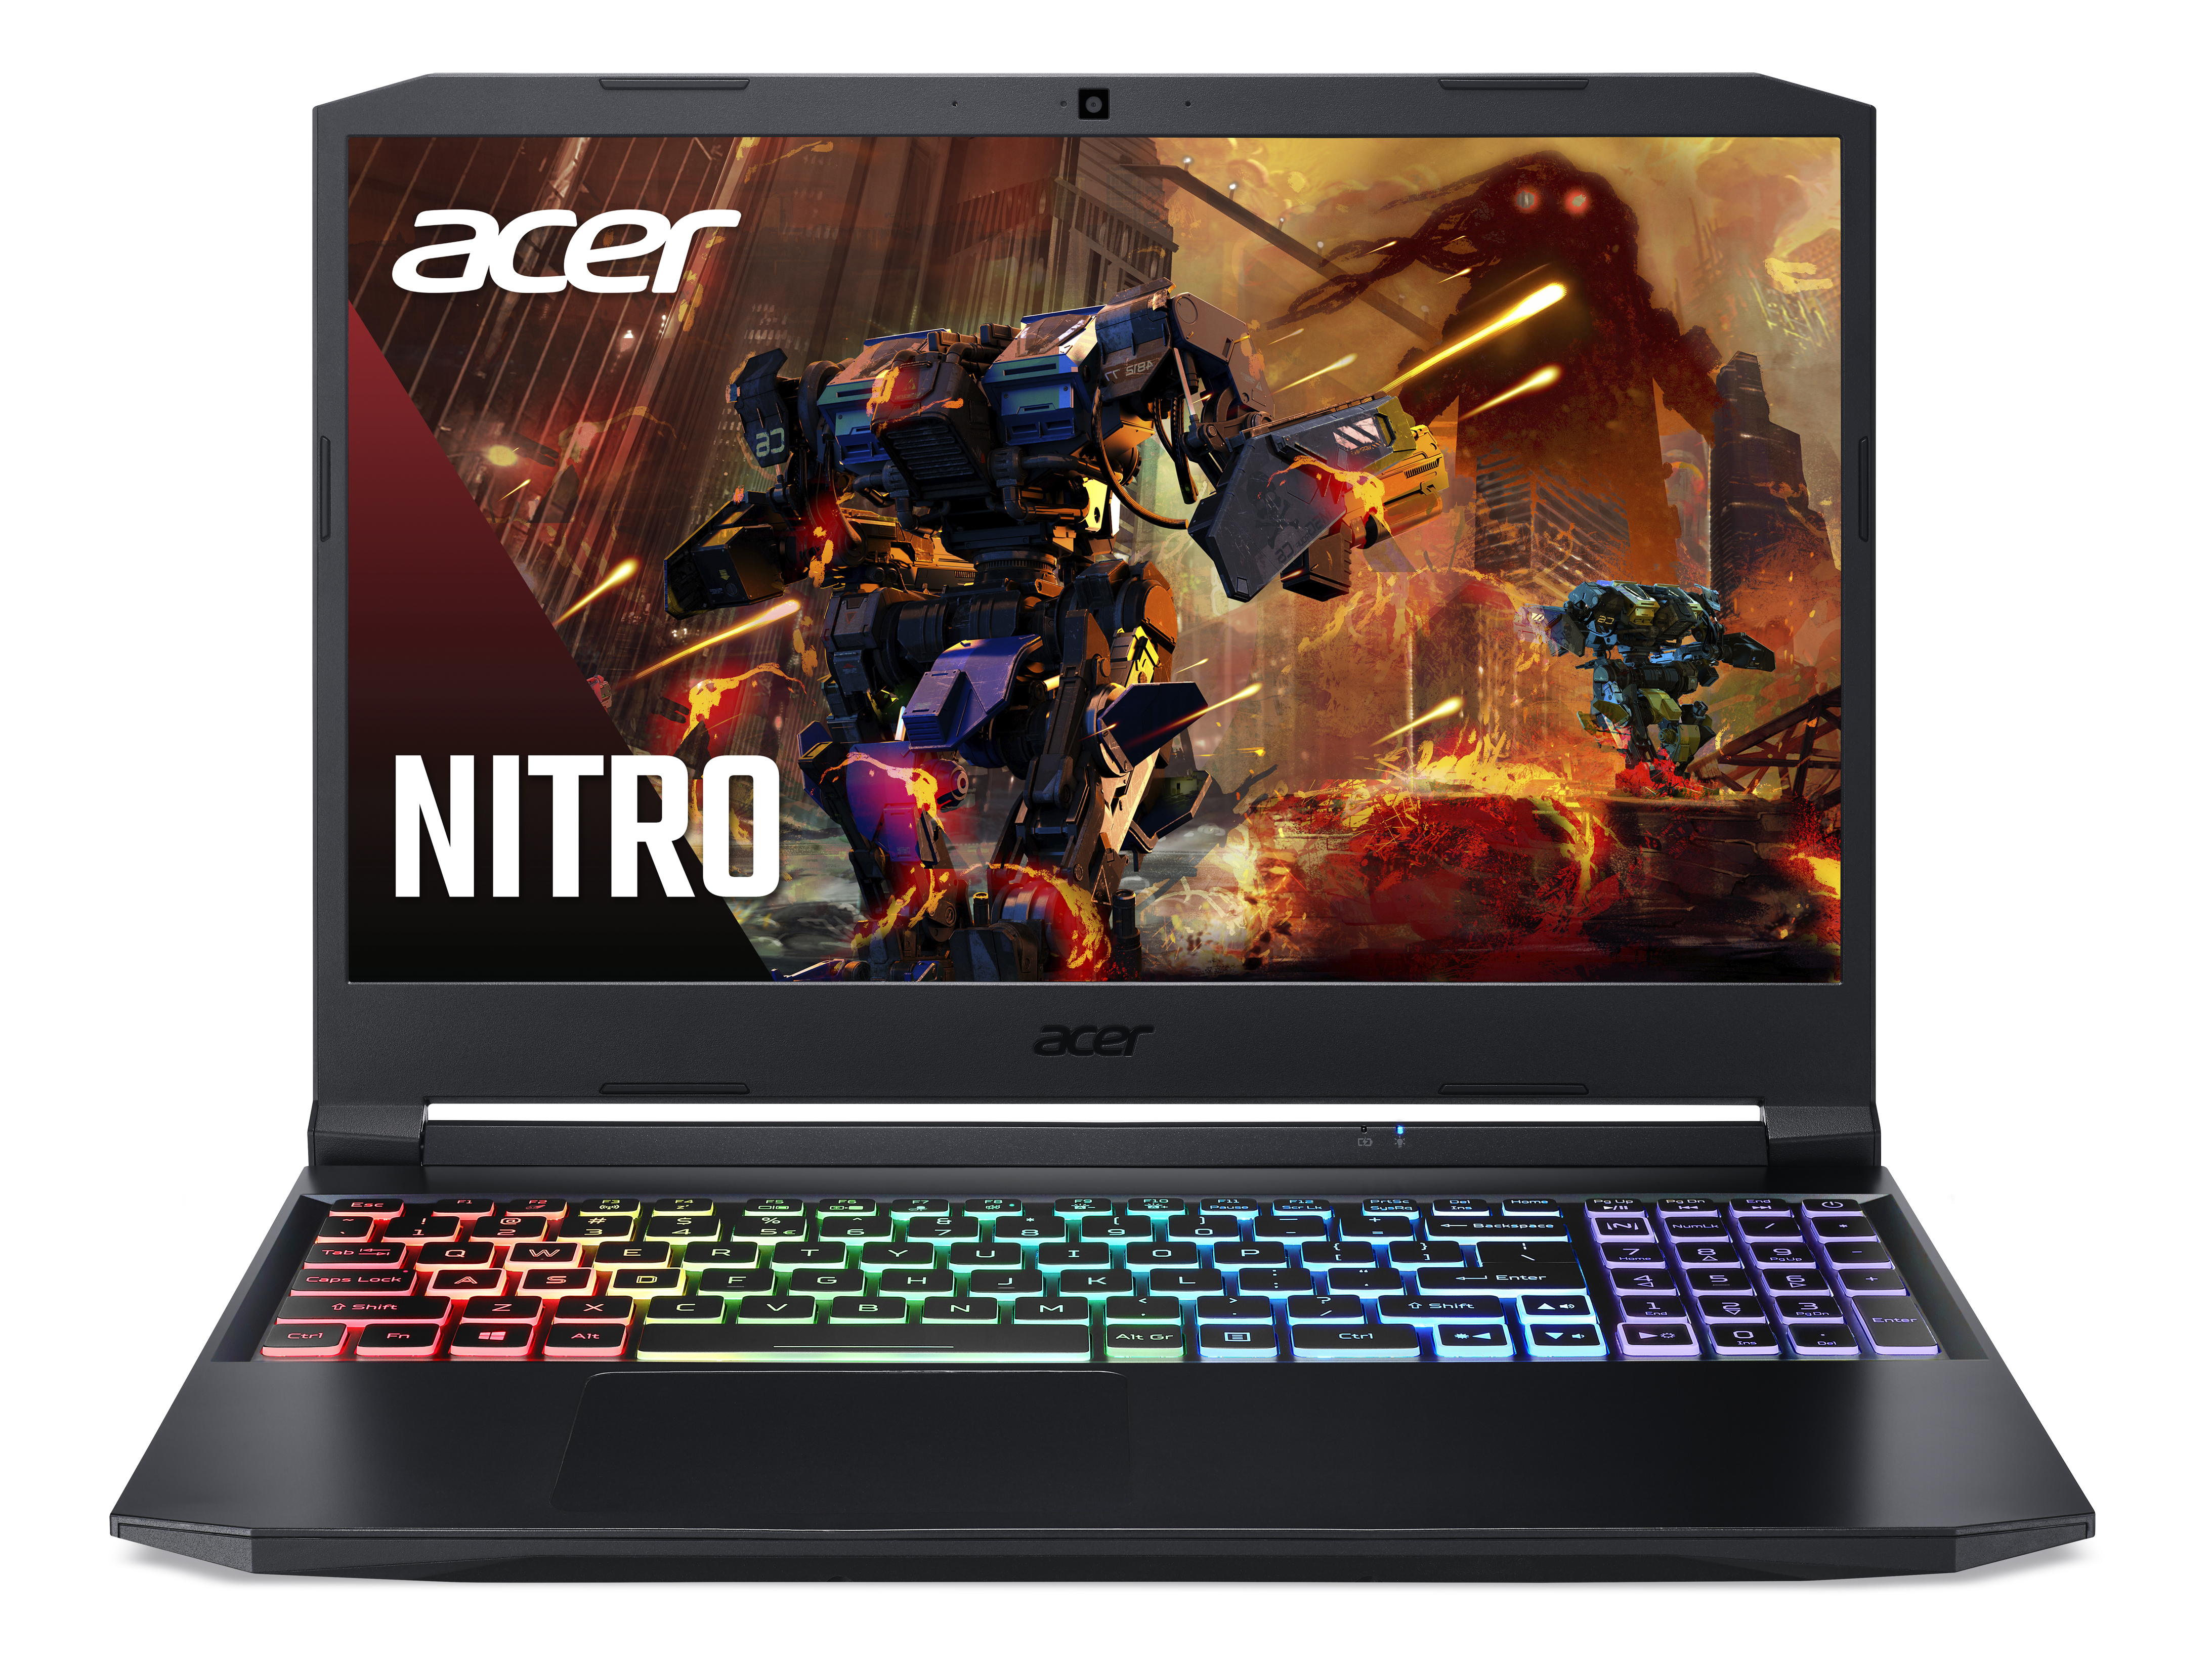 Игровые ноутбуки рублей купить. Acer Nitro an515. Асер нитро 5 an515. Игровой ноутбук Асер нитро 5. Ноутбук Acer Nitro 5 an515.